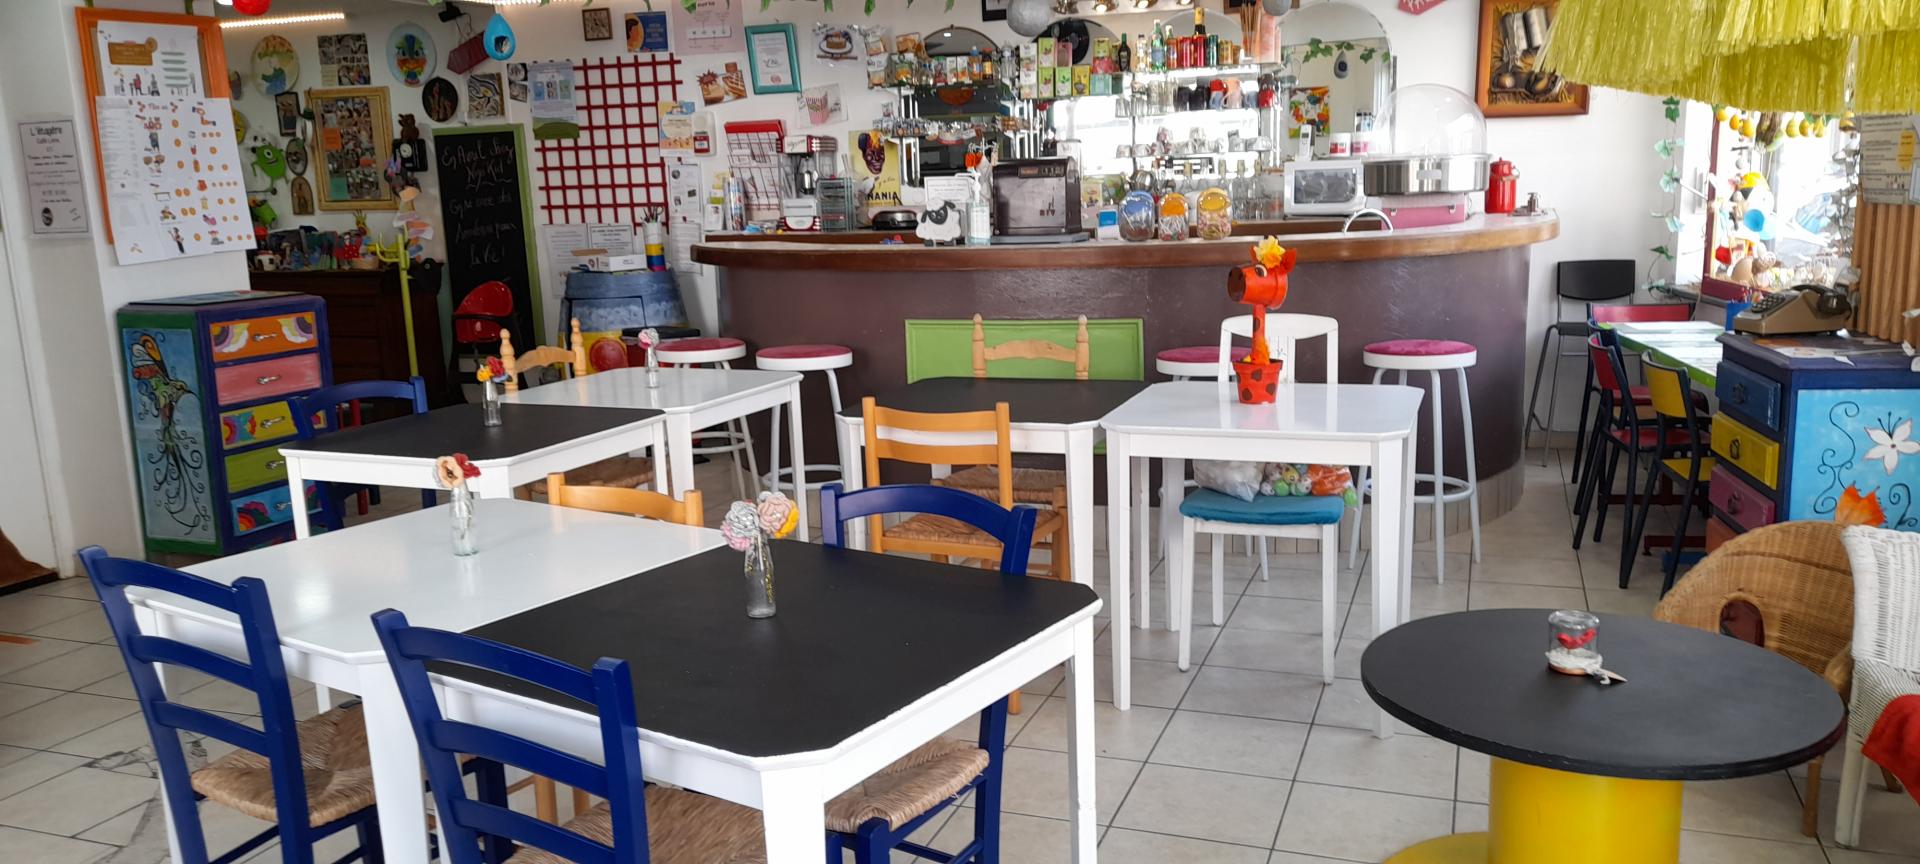 Café Culturel et Ecocitoyen - Café des Enfants Nino'Kid